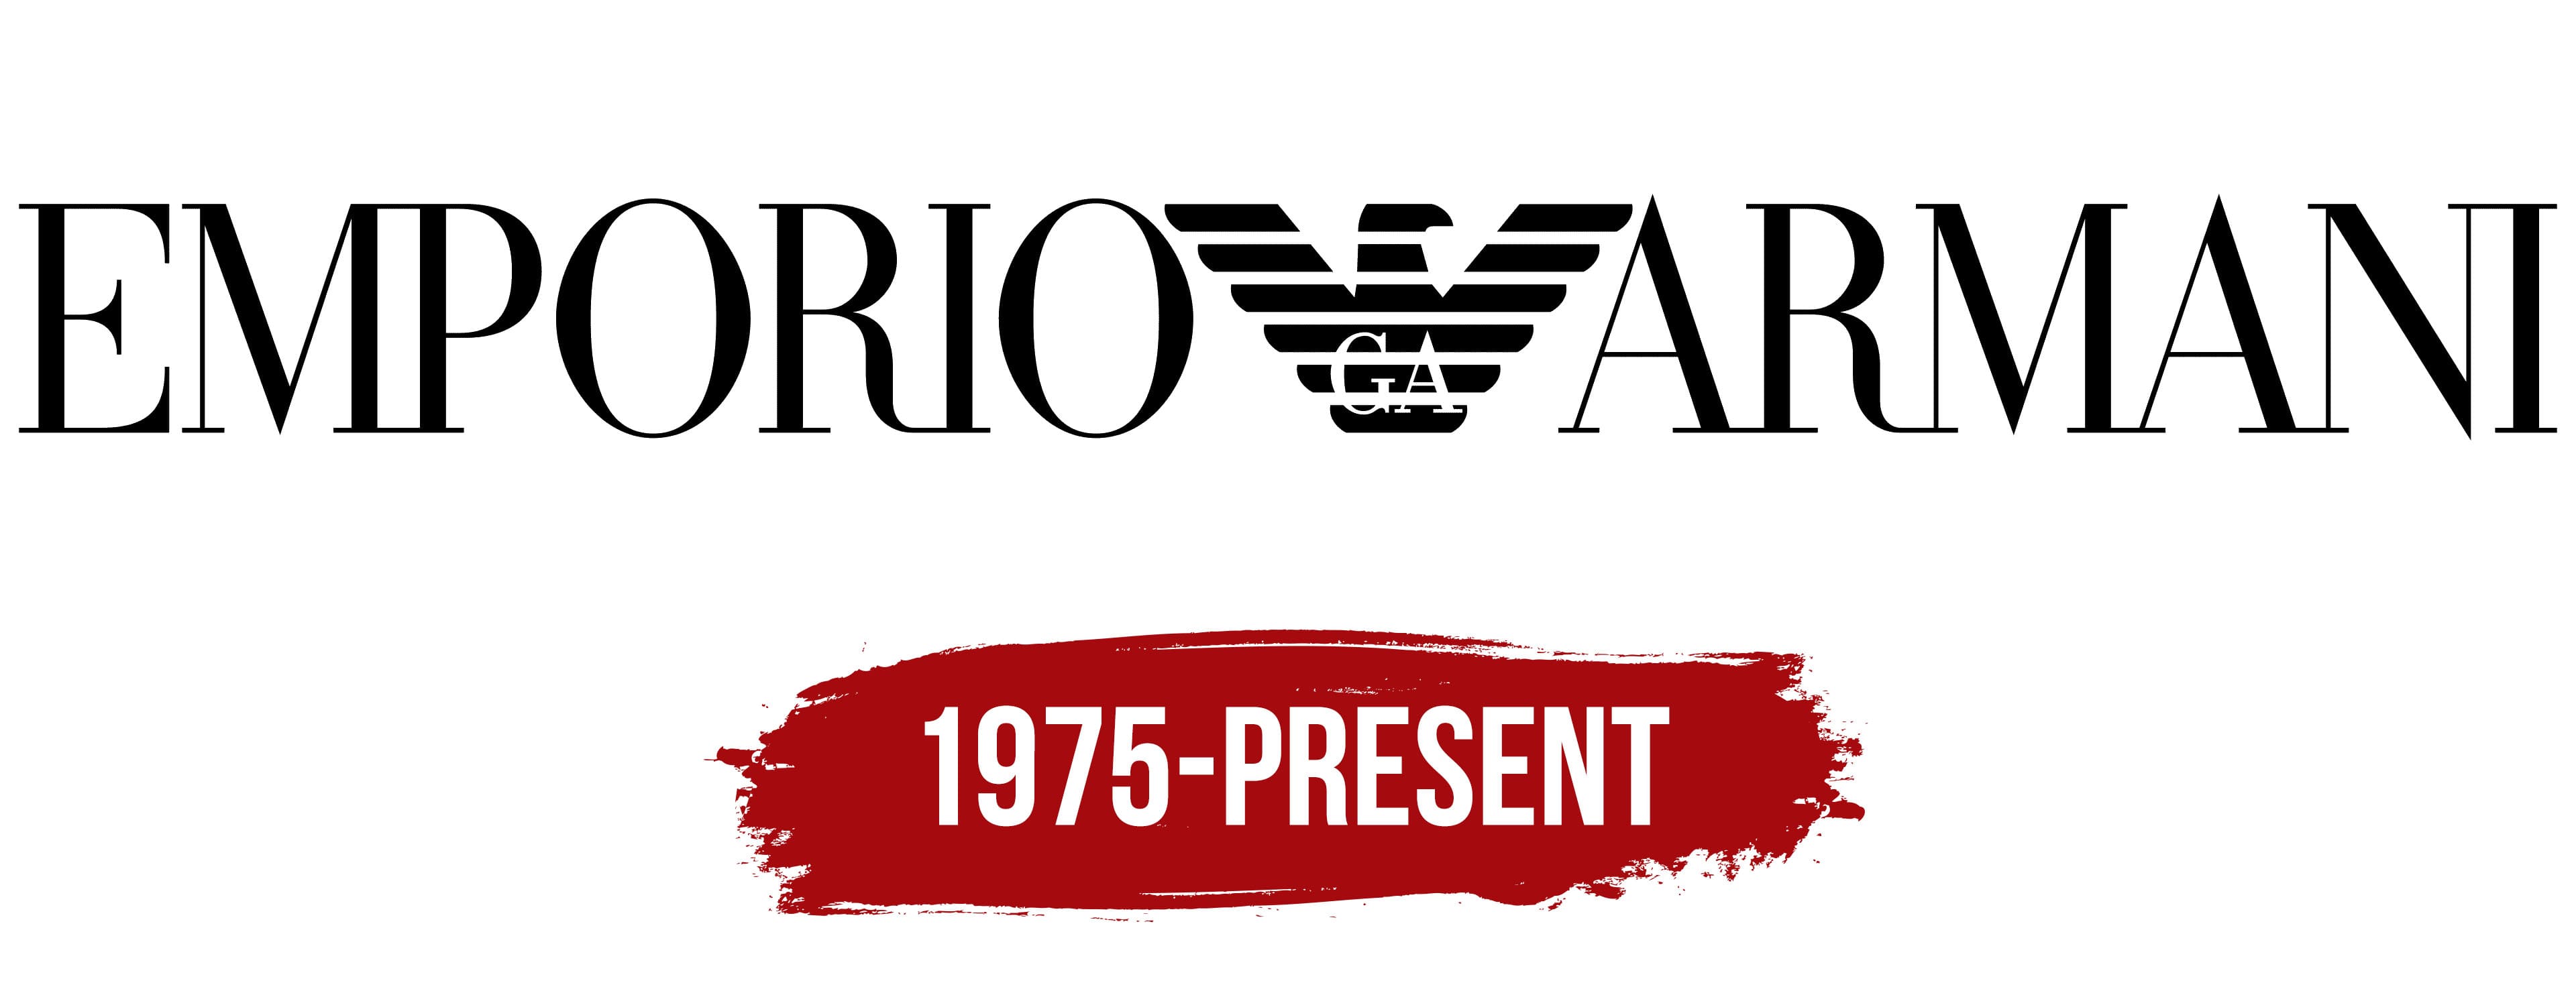 Giorgio Armani: A Brand Timeline